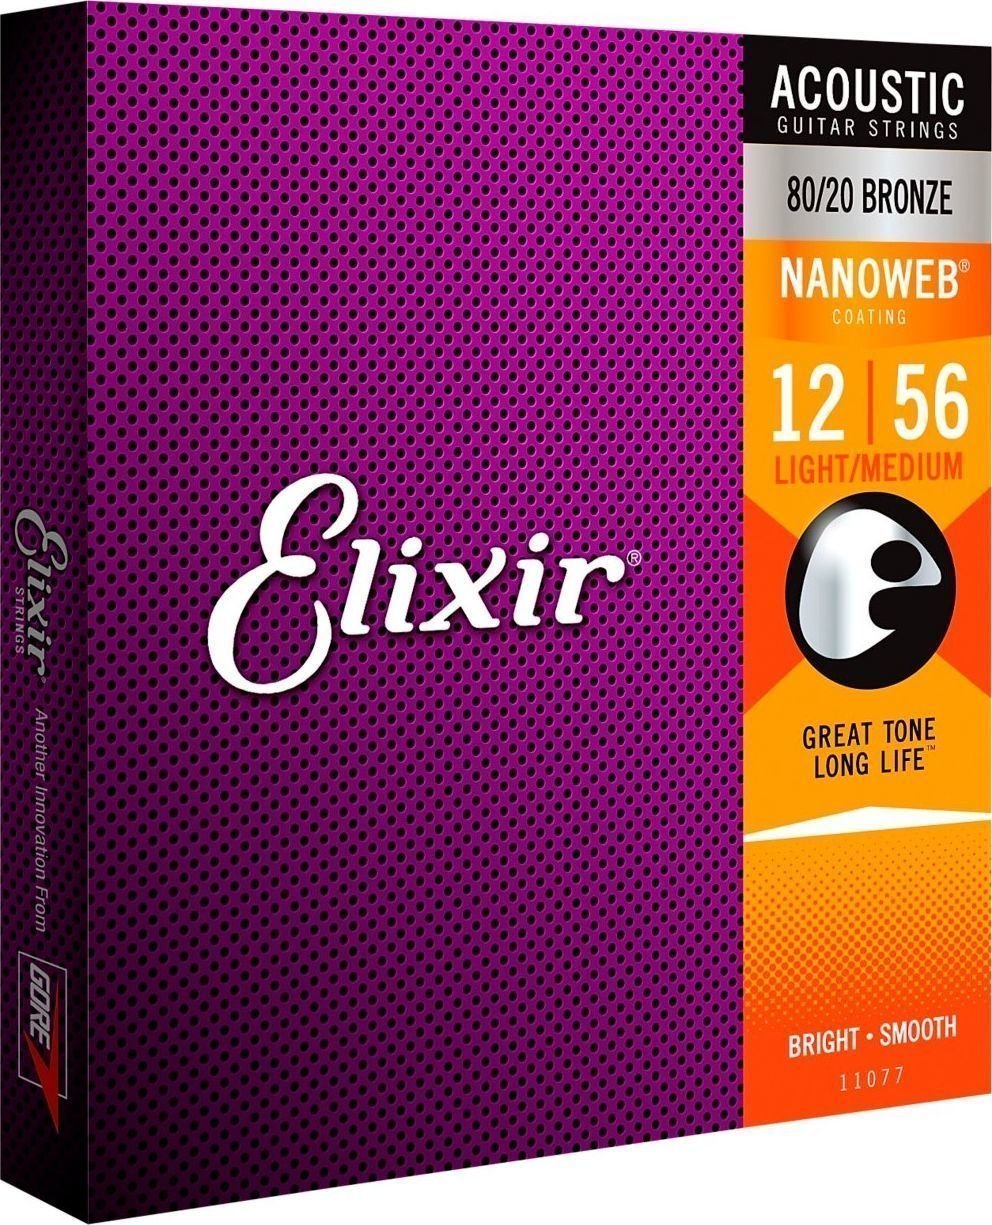 Snaren voor akoestische gitaar Elixir 11077 Nanoweb 12-56